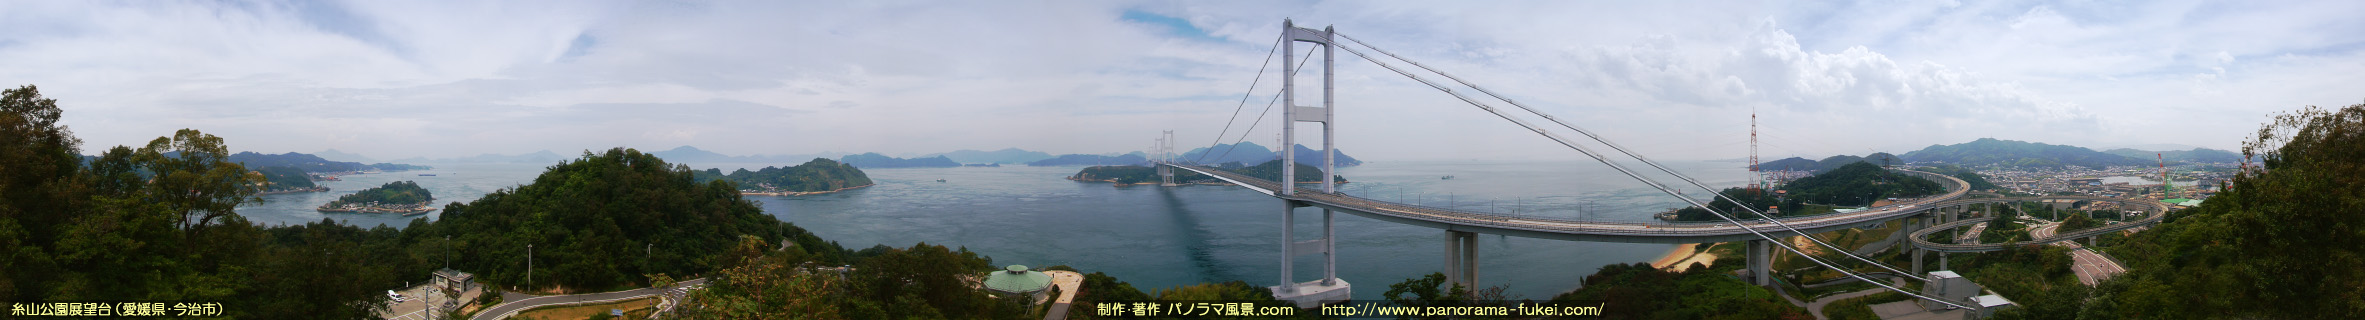 糸山公園展望台から望むしまなみ街道・来島海峡大橋の360度パノラマ風景写真